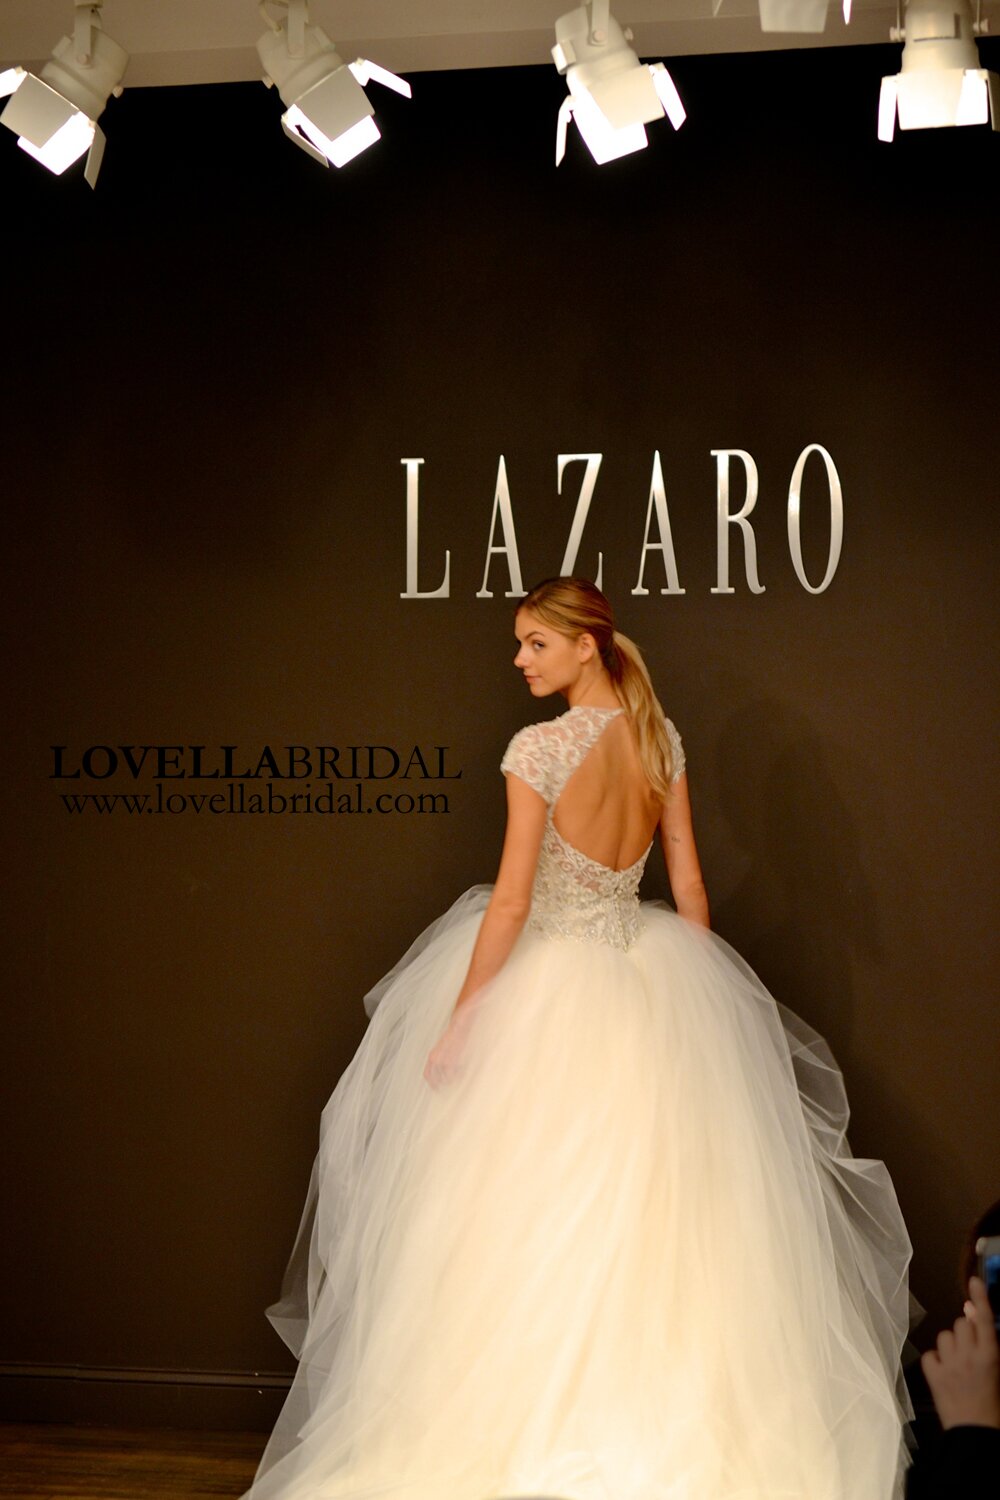 Lazaro wedding dresses 2014 Photo - 8